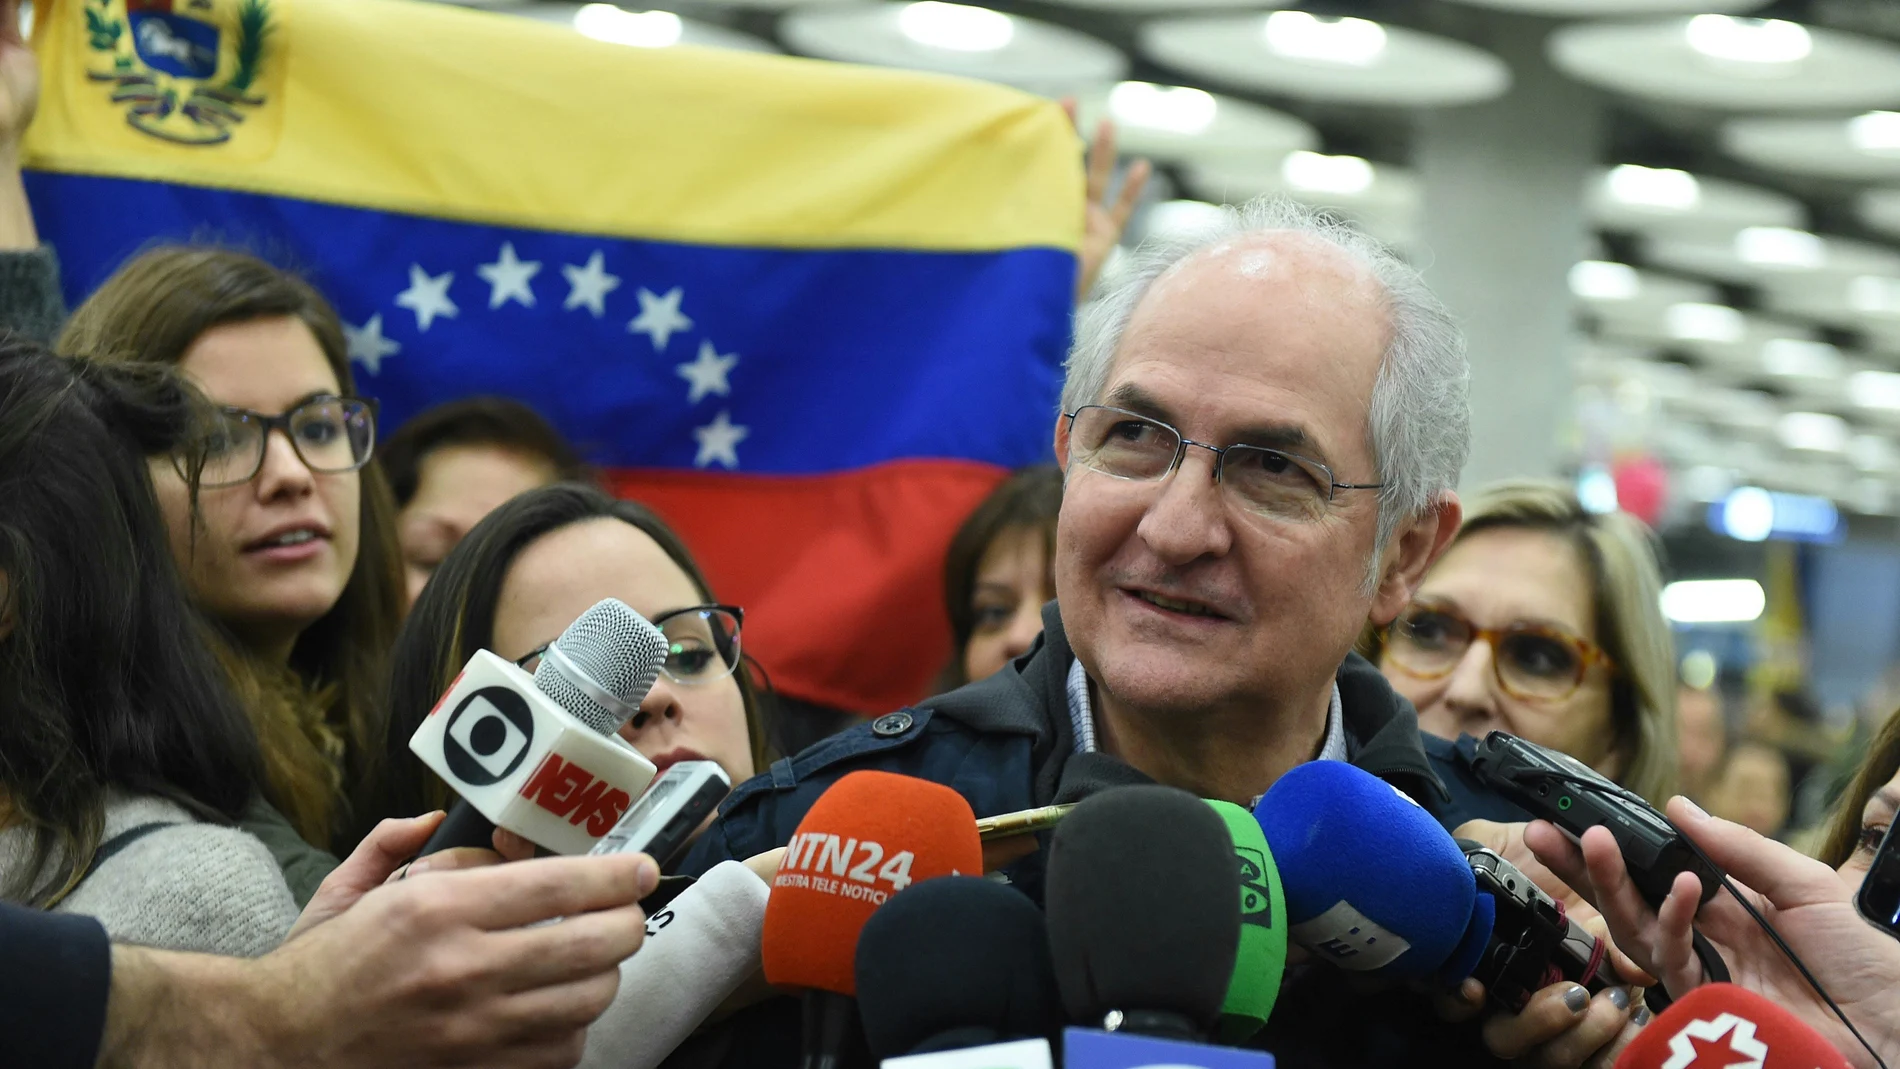 El opositor venezolano Antonio Ledezma